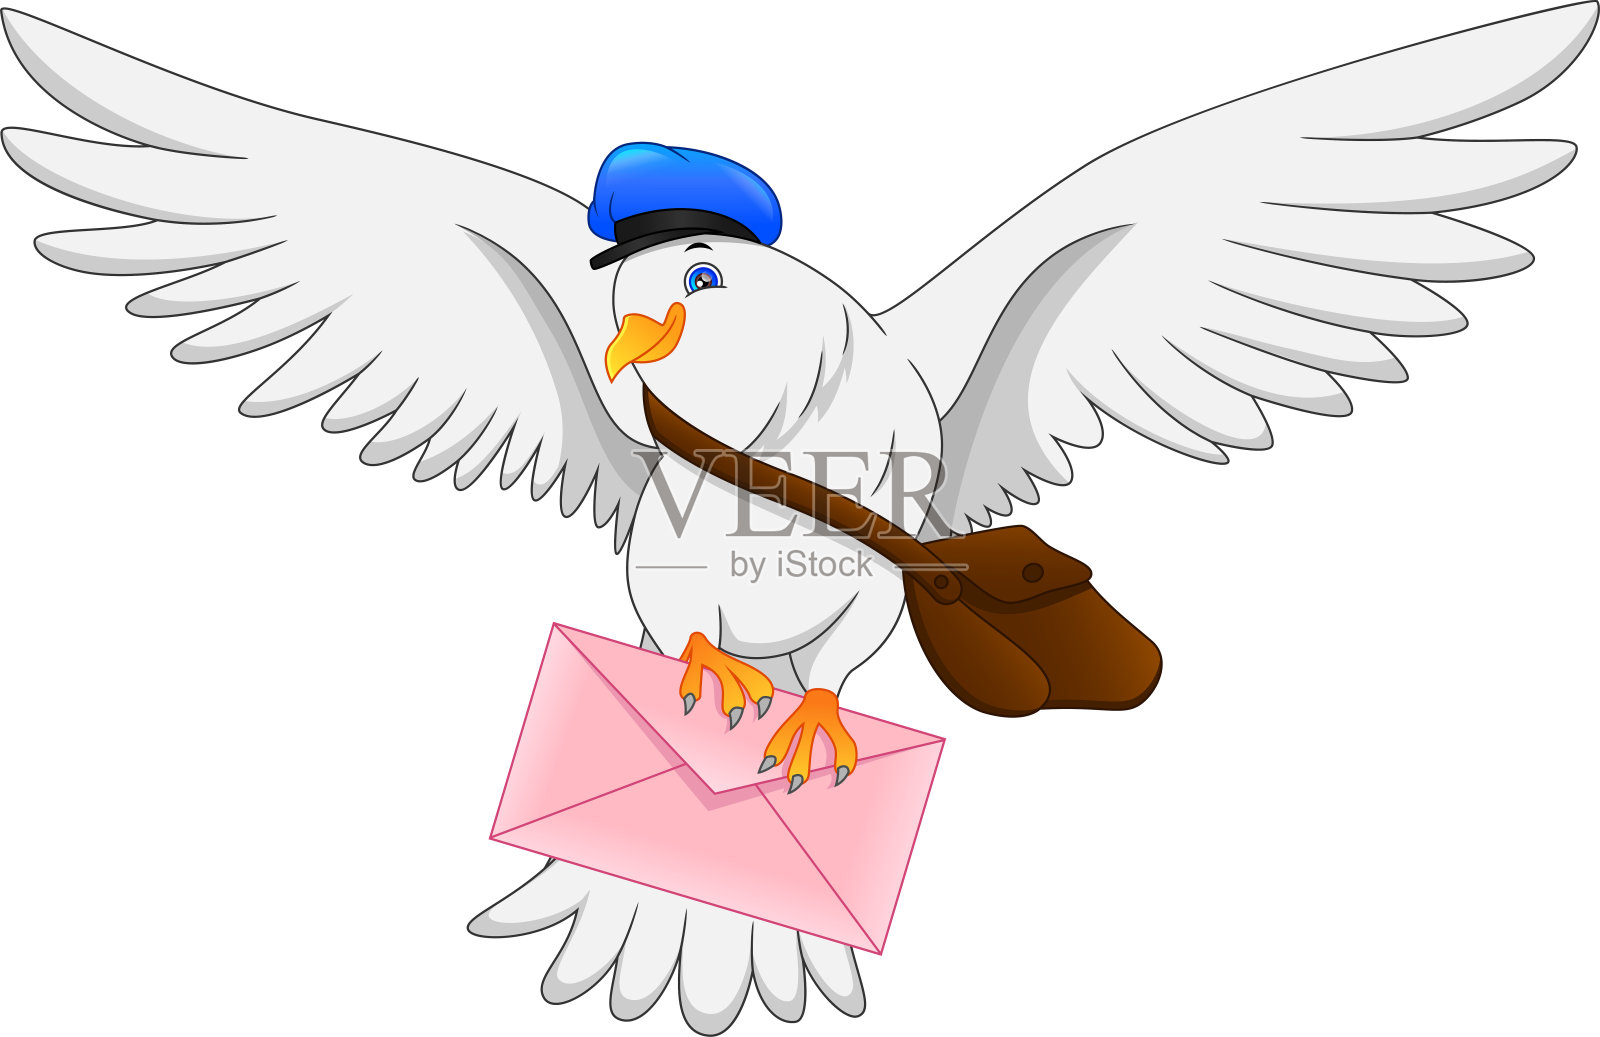 有信件和包裹的动画片邮差 向量例证. 插画 包括有 例证, 过帐, 幸福, 血液, 人员, 邮件, 滑稽 - 29783178